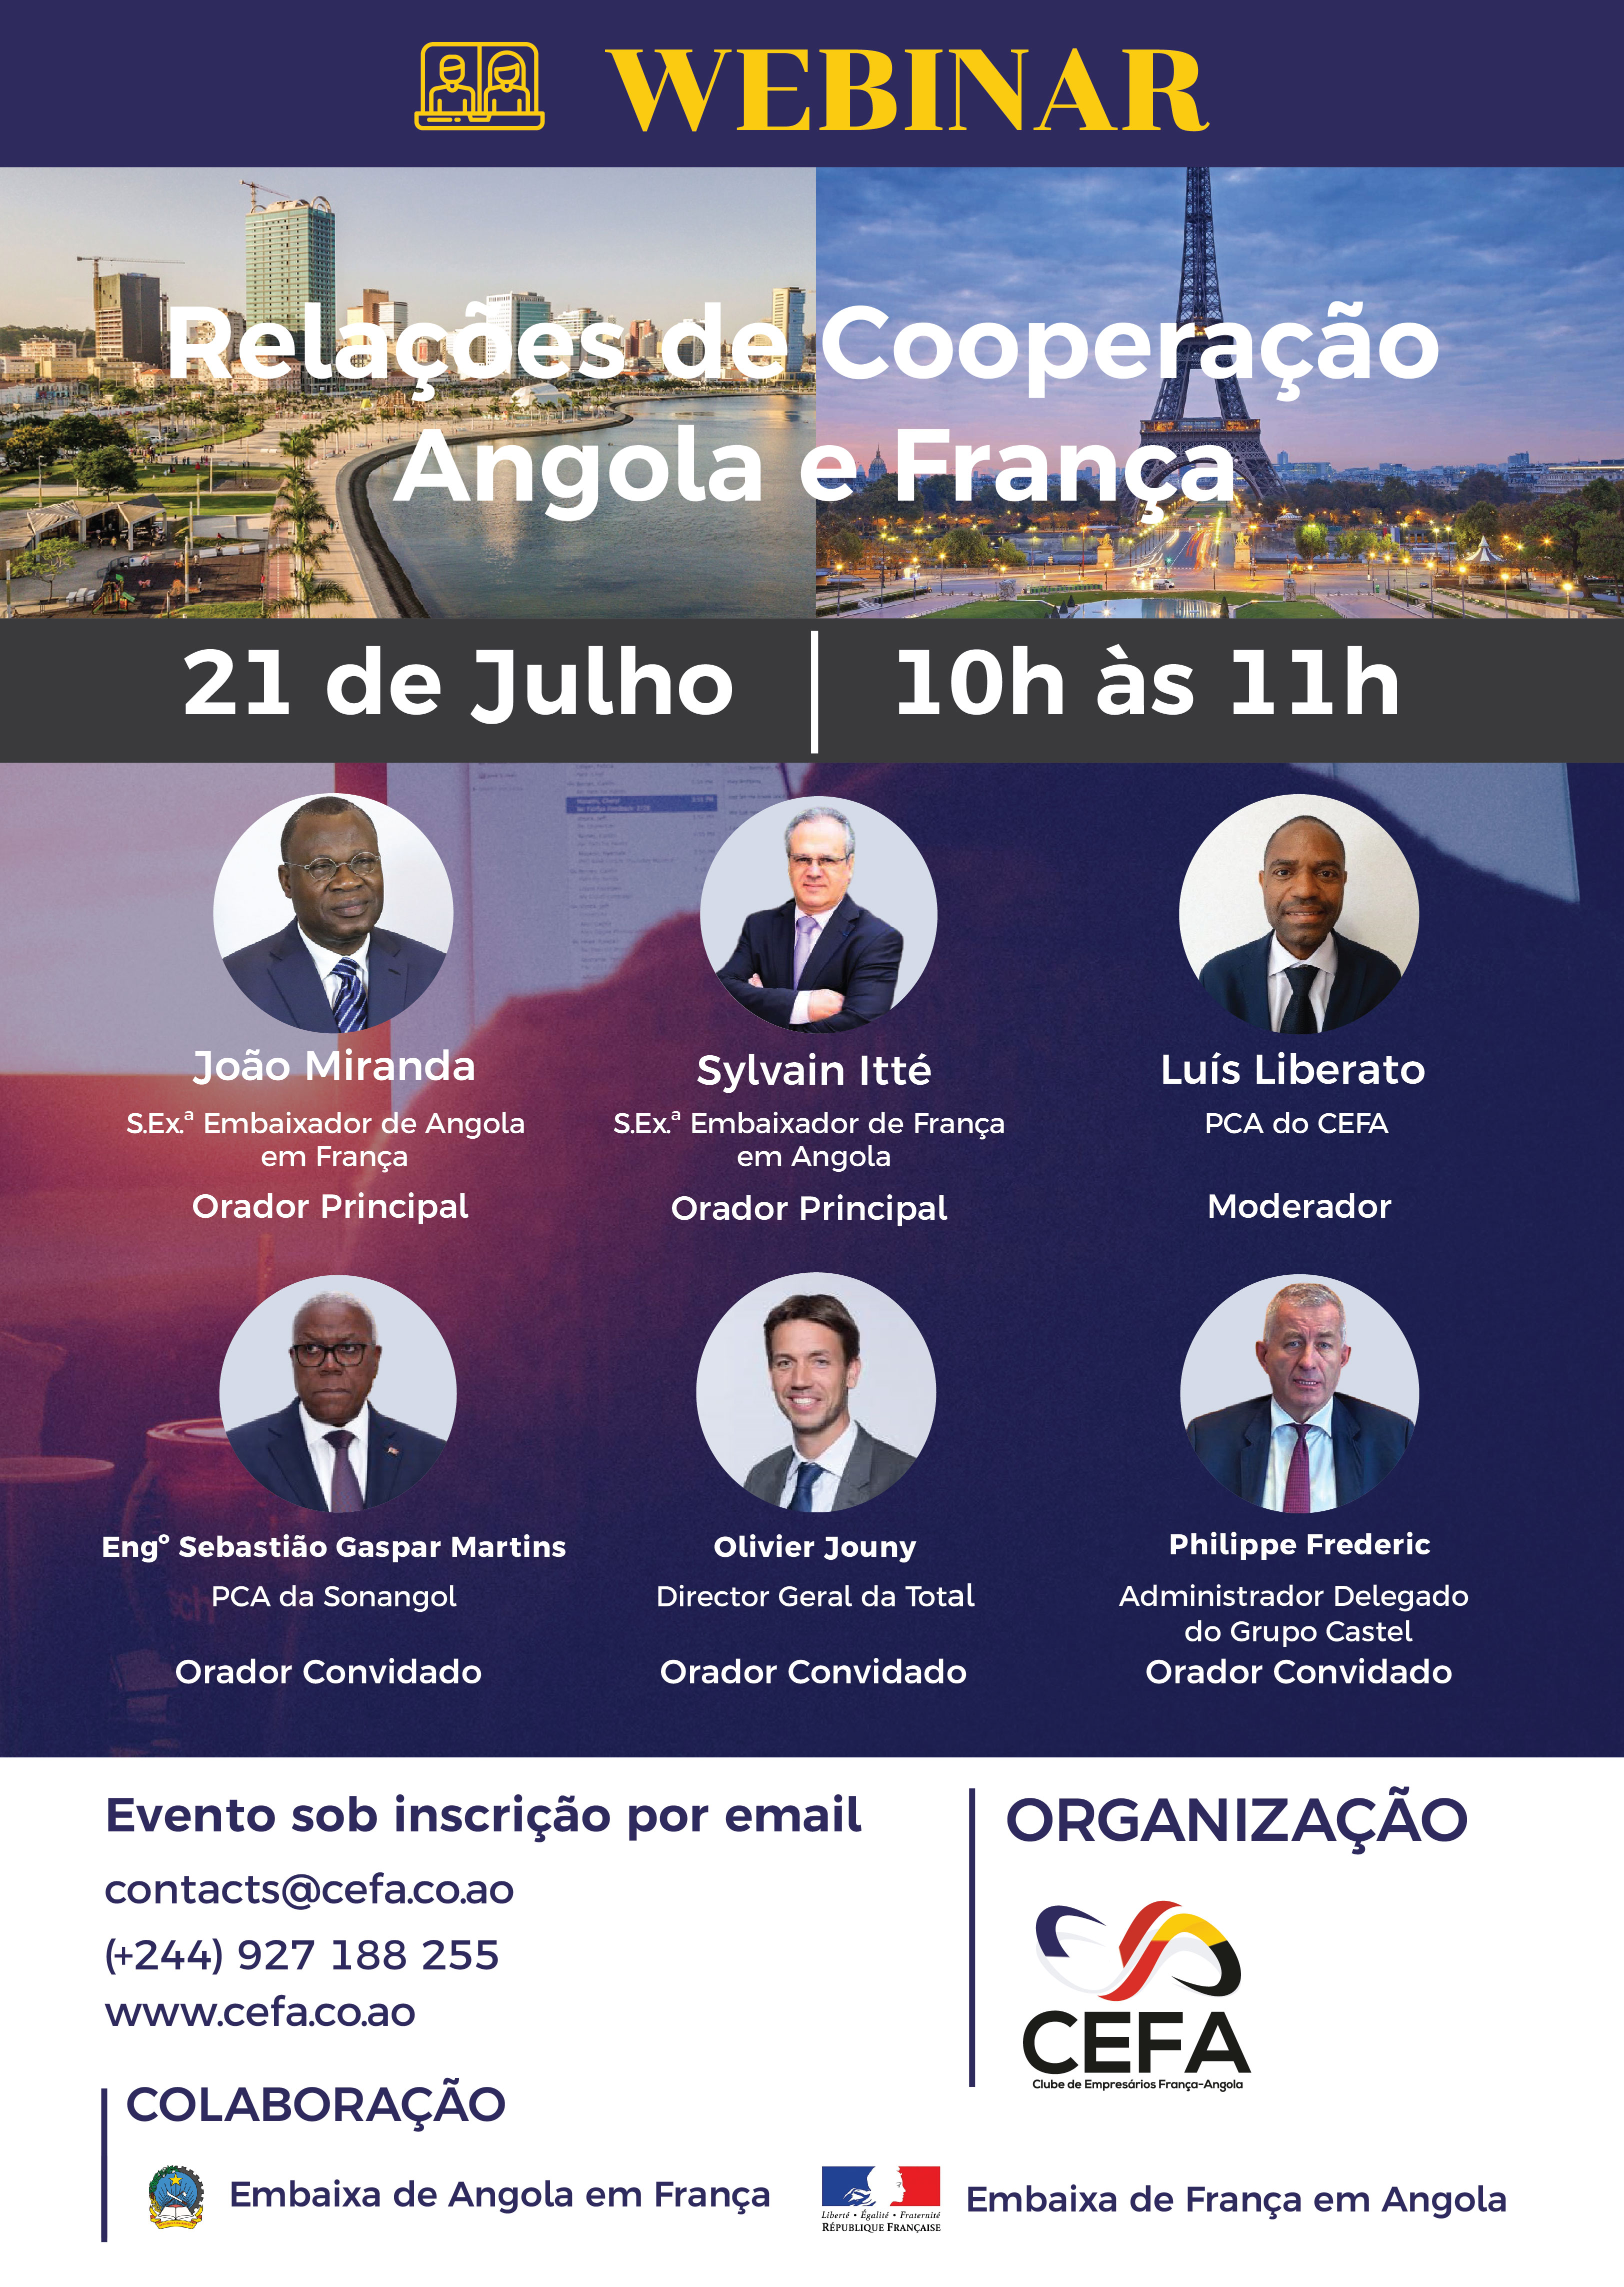 Relações de Cooperação Angola e França